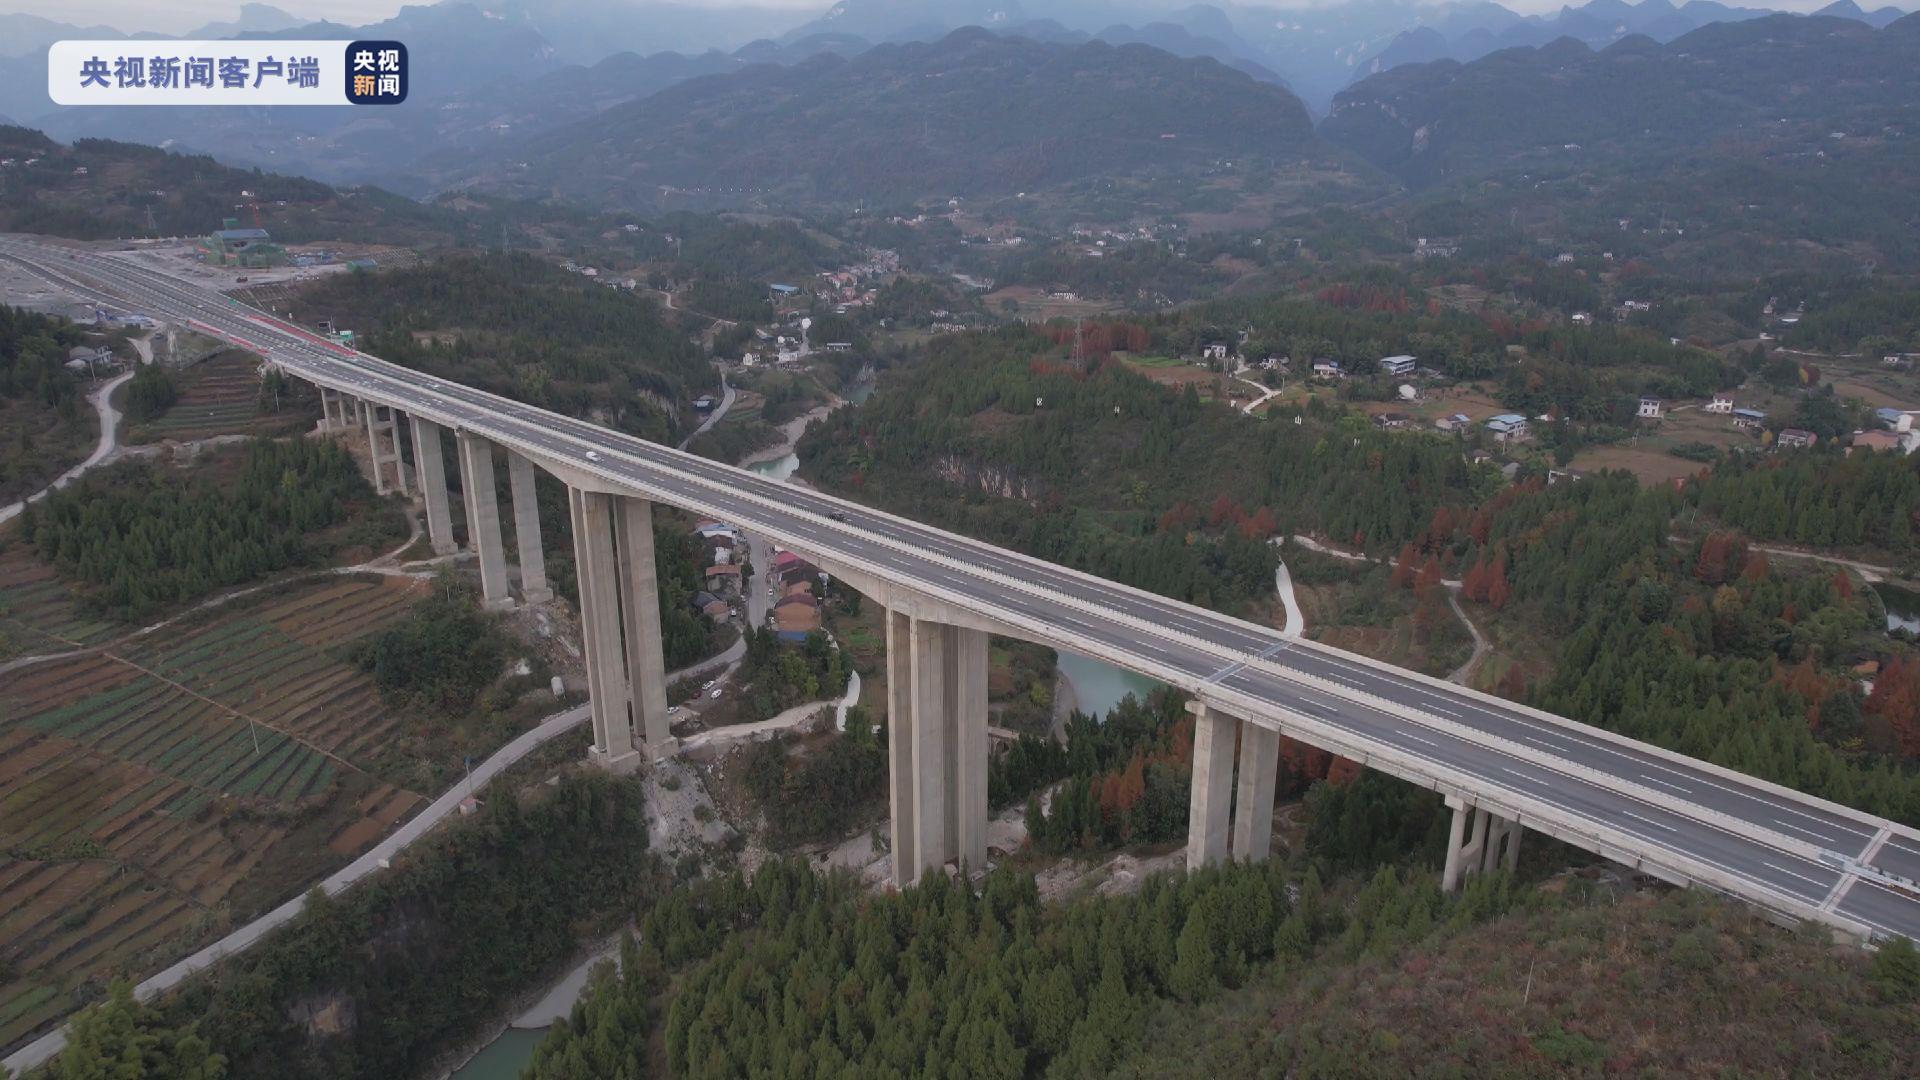 重庆最长高速公路隧道城开特长隧道全线贯通